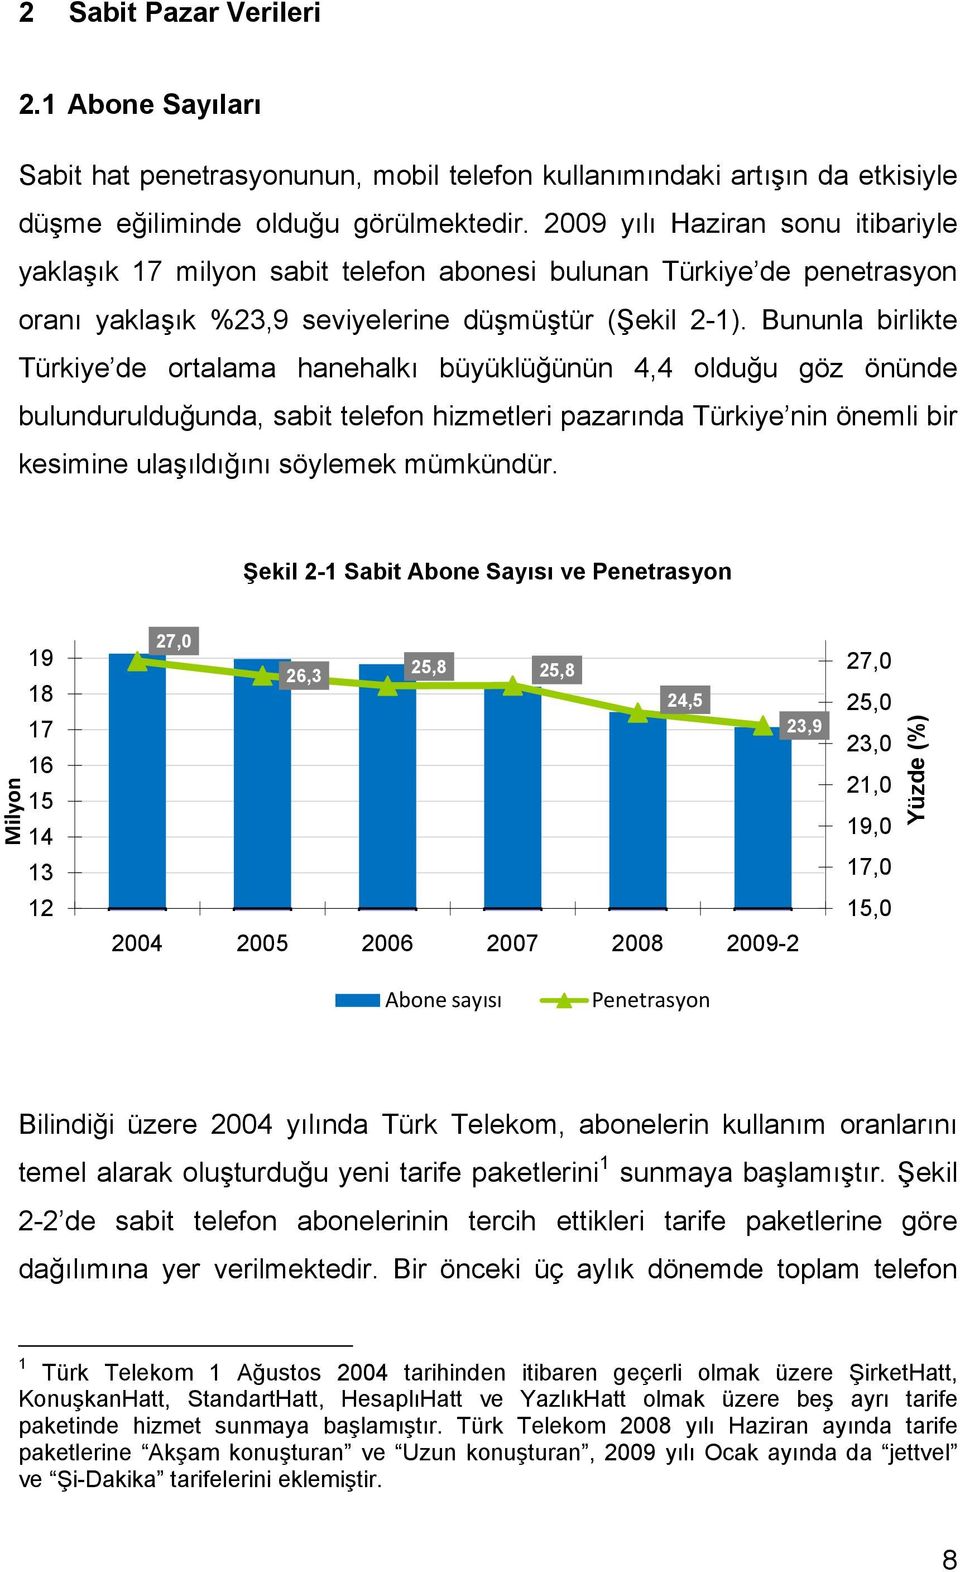 Bununla birlikte Türkiye de ortalama hanehalkı büyüklüğünün 4,4 olduğu göz önünde bulundurulduğunda, sabit telefon hizmetleri pazarında Türkiye nin önemli bir kesimine ulaşıldığını söylemek mümkündür.